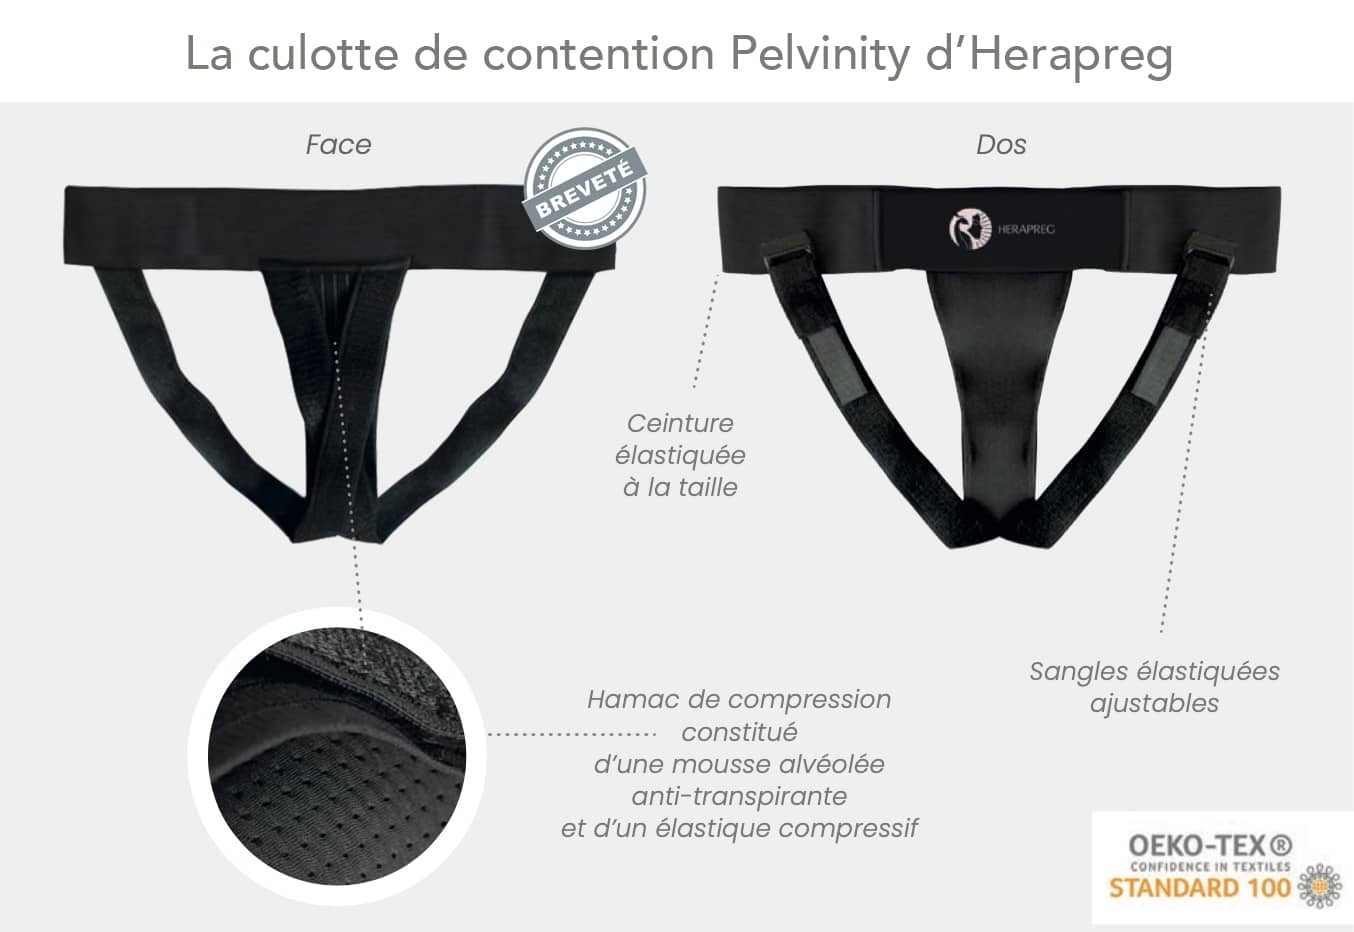 Schéma légendé de la culotte de contention Pelvinity d’Herapreg